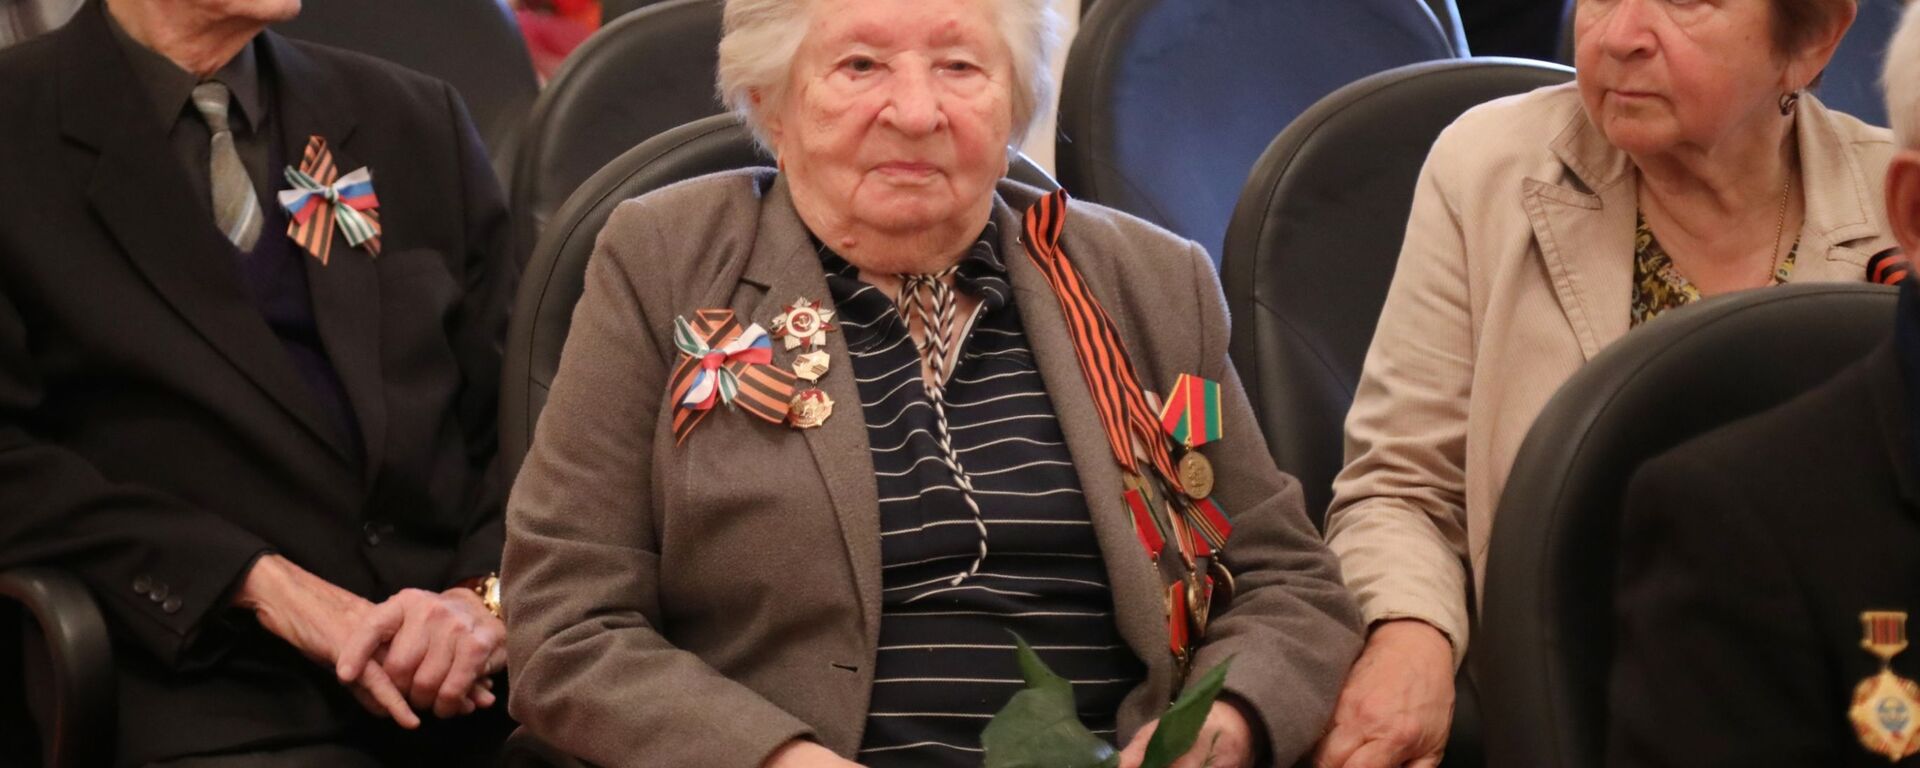 Ветеран ВОВ Мария Глускер  - Sputnik Абхазия, 1920, 09.05.2019